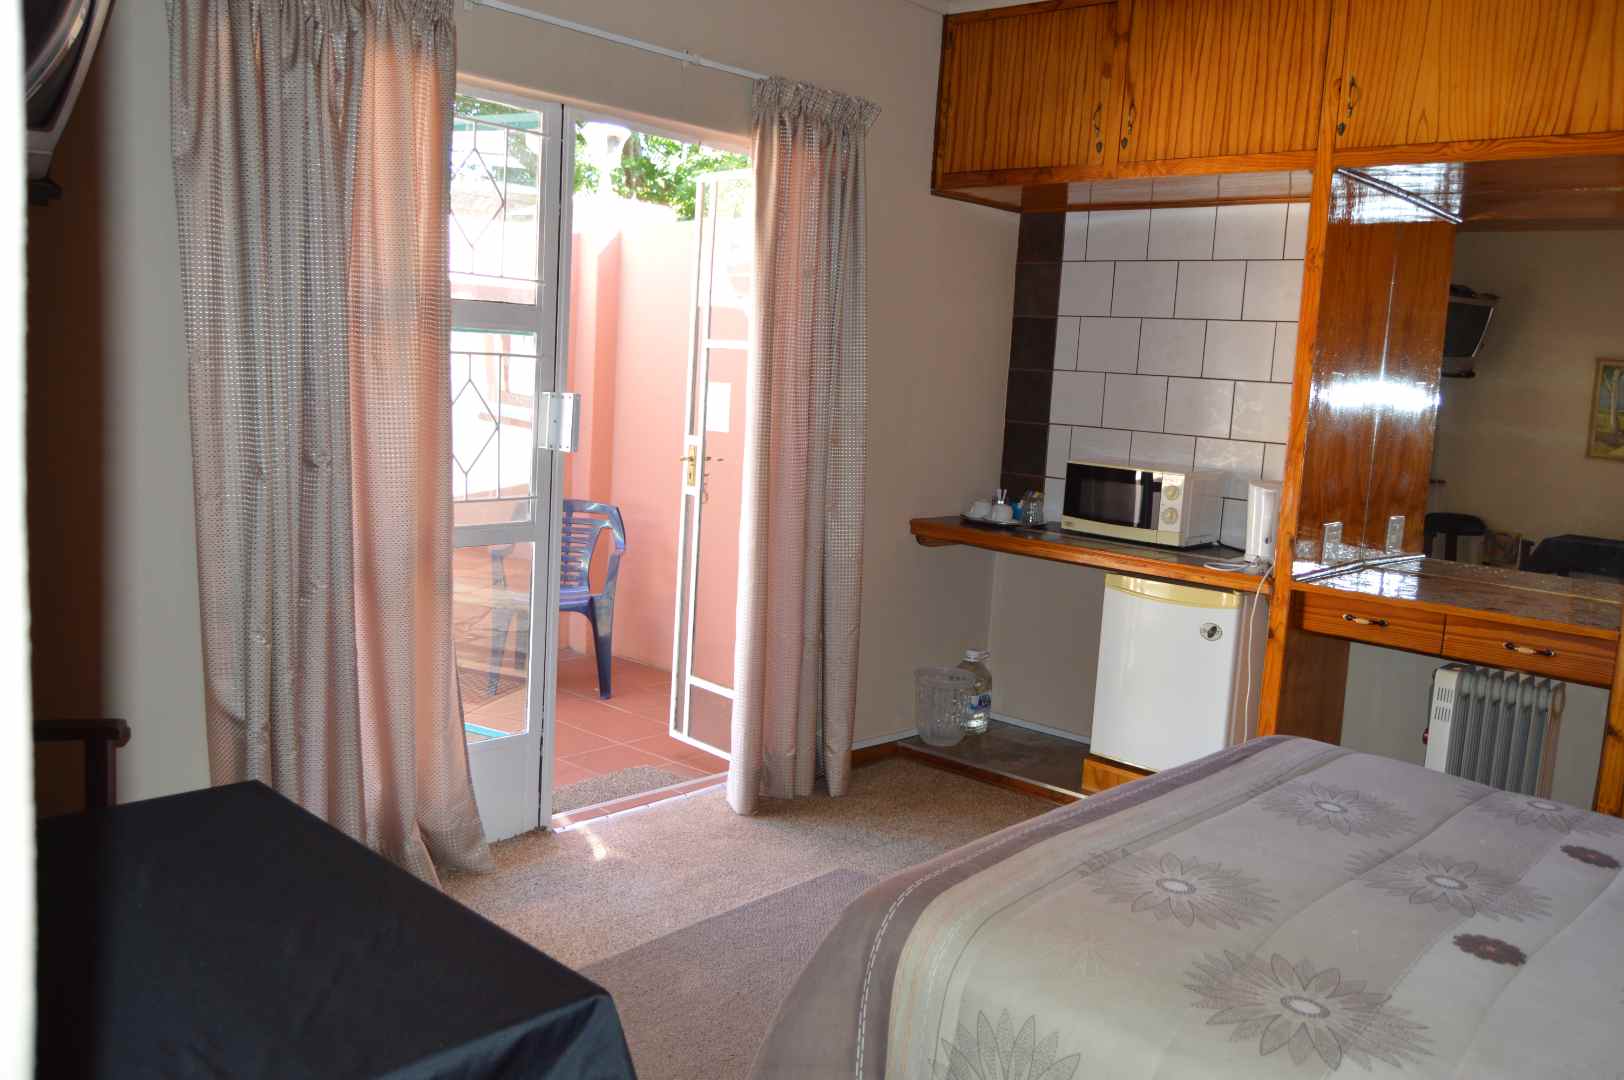 19 Bedroom Property for Sale in Arborpark KwaZulu-Natal